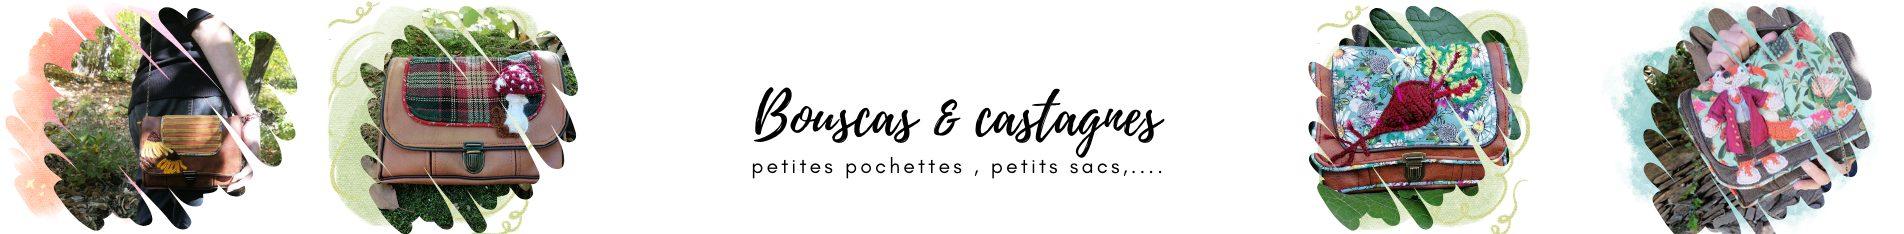 Castagne & Bouscas